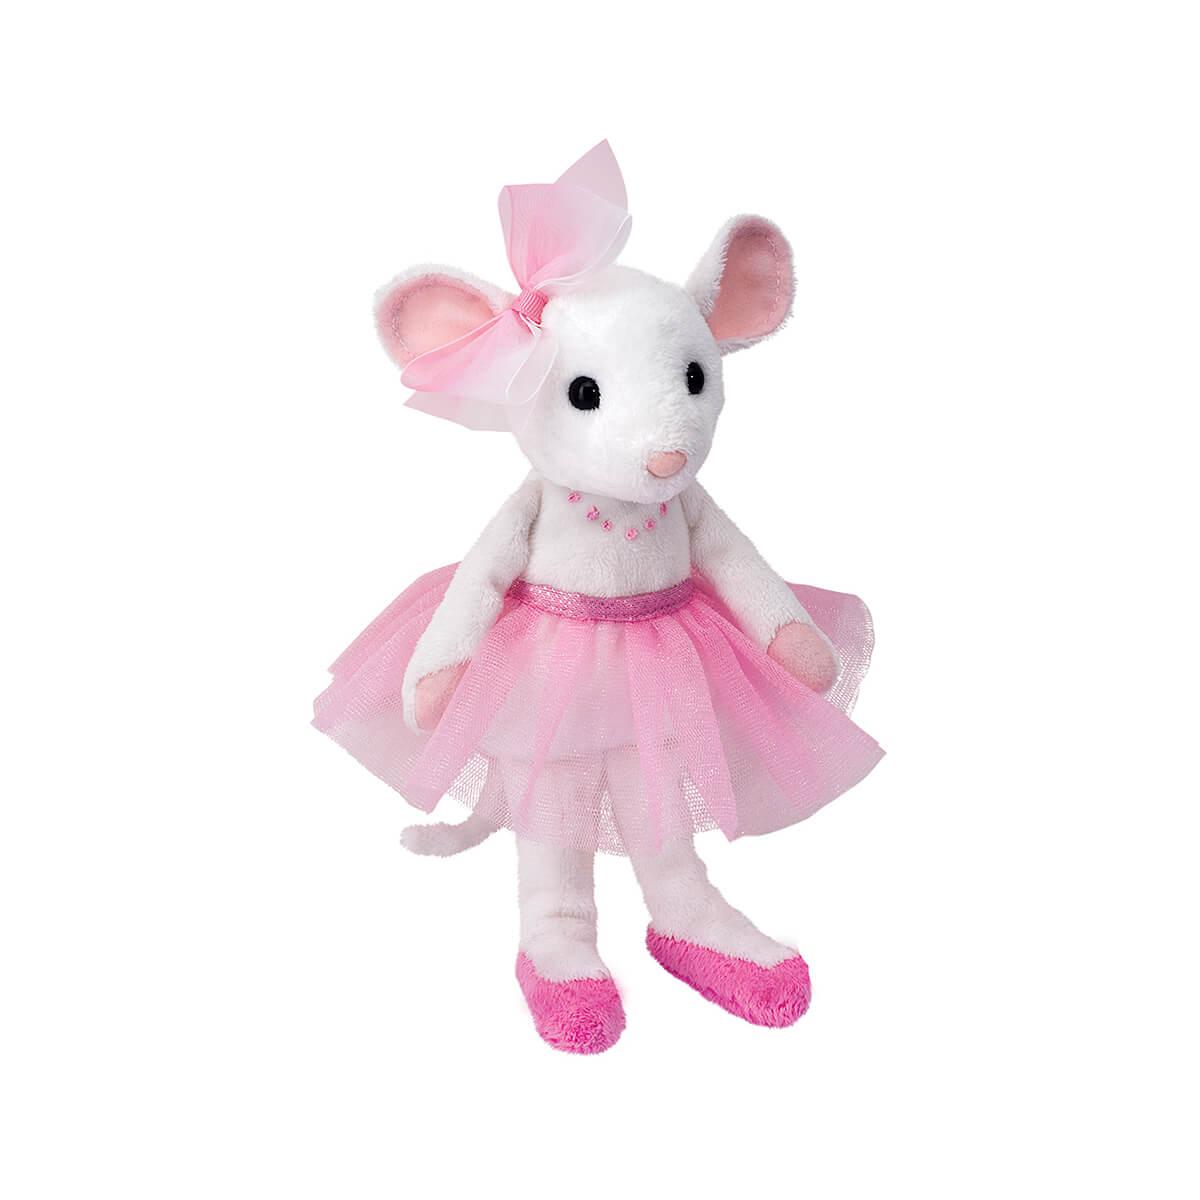  Petunia Ballerina Mouse Plush Toy